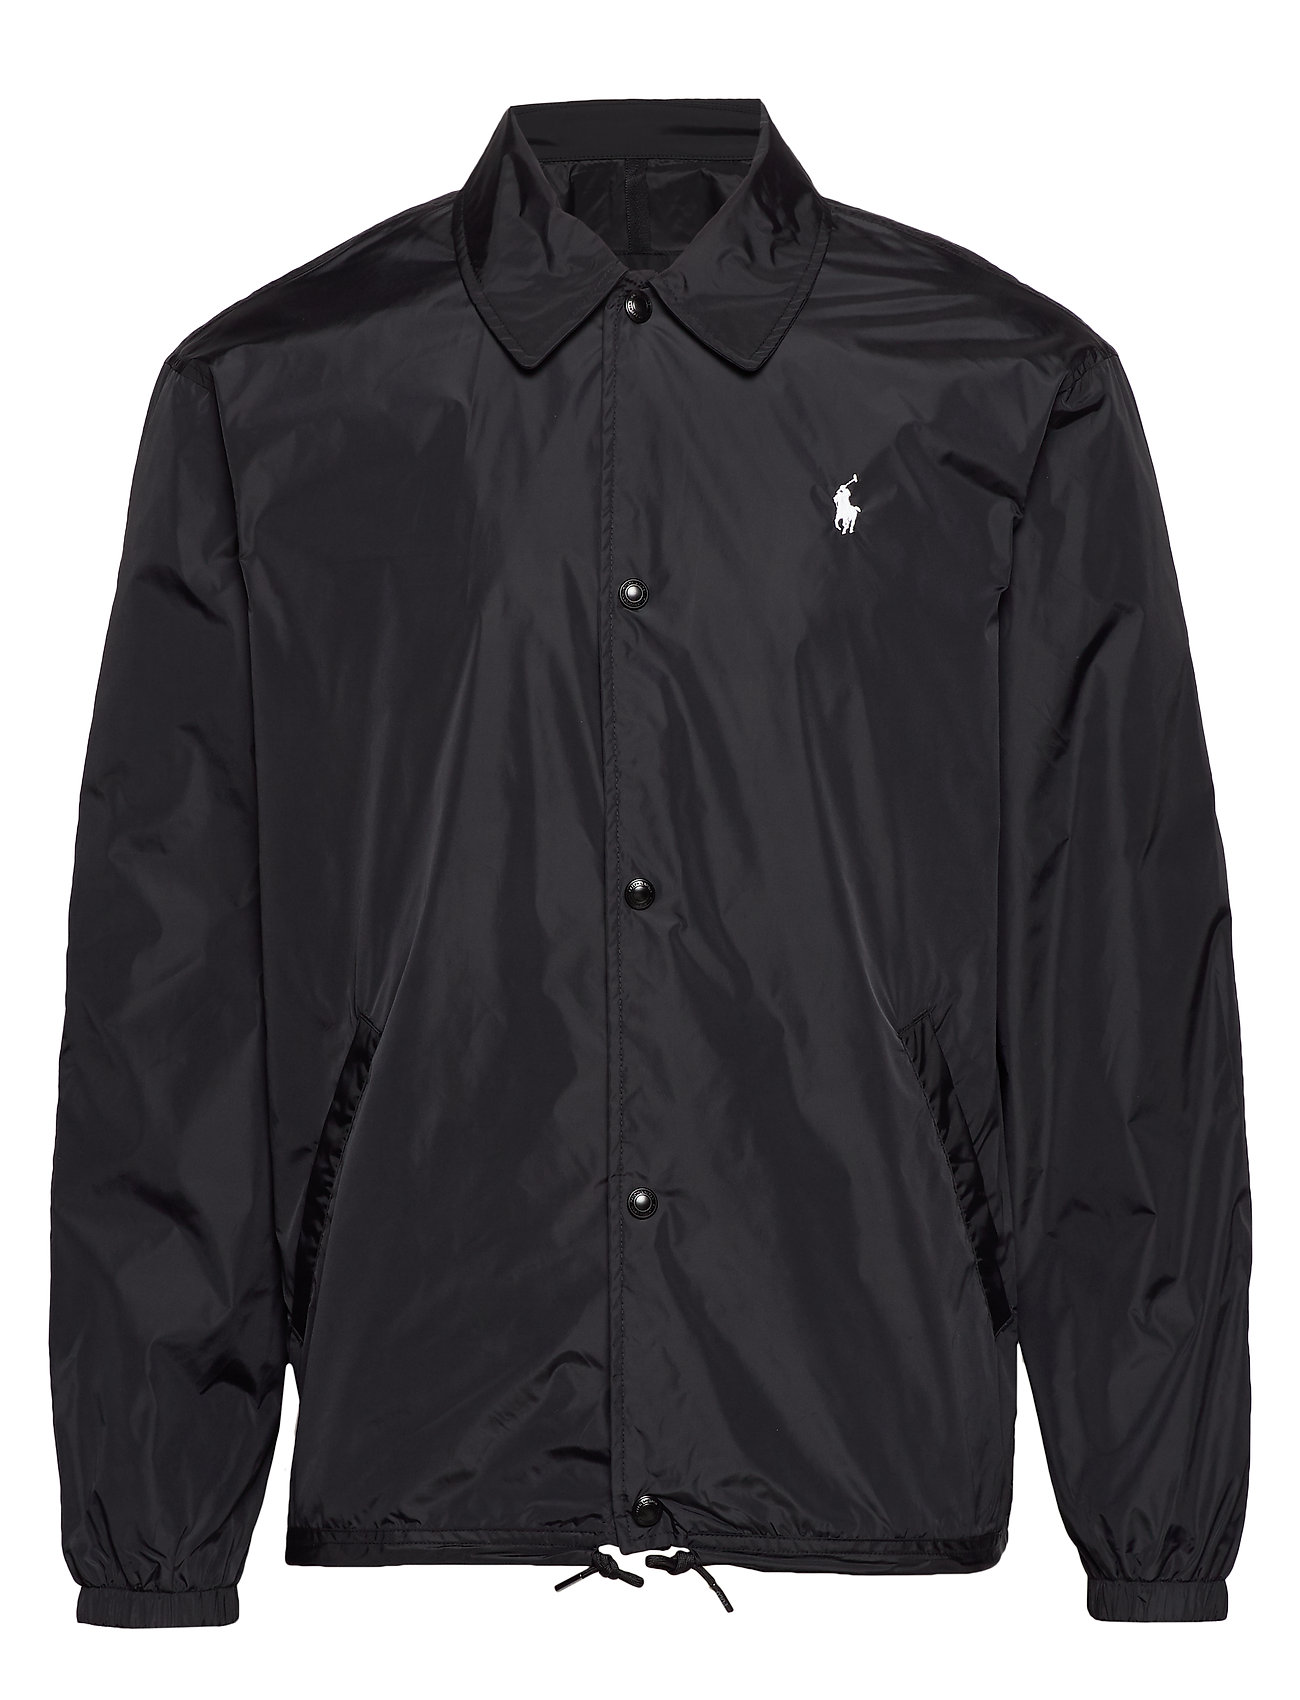 black polo ralph lauren jacket